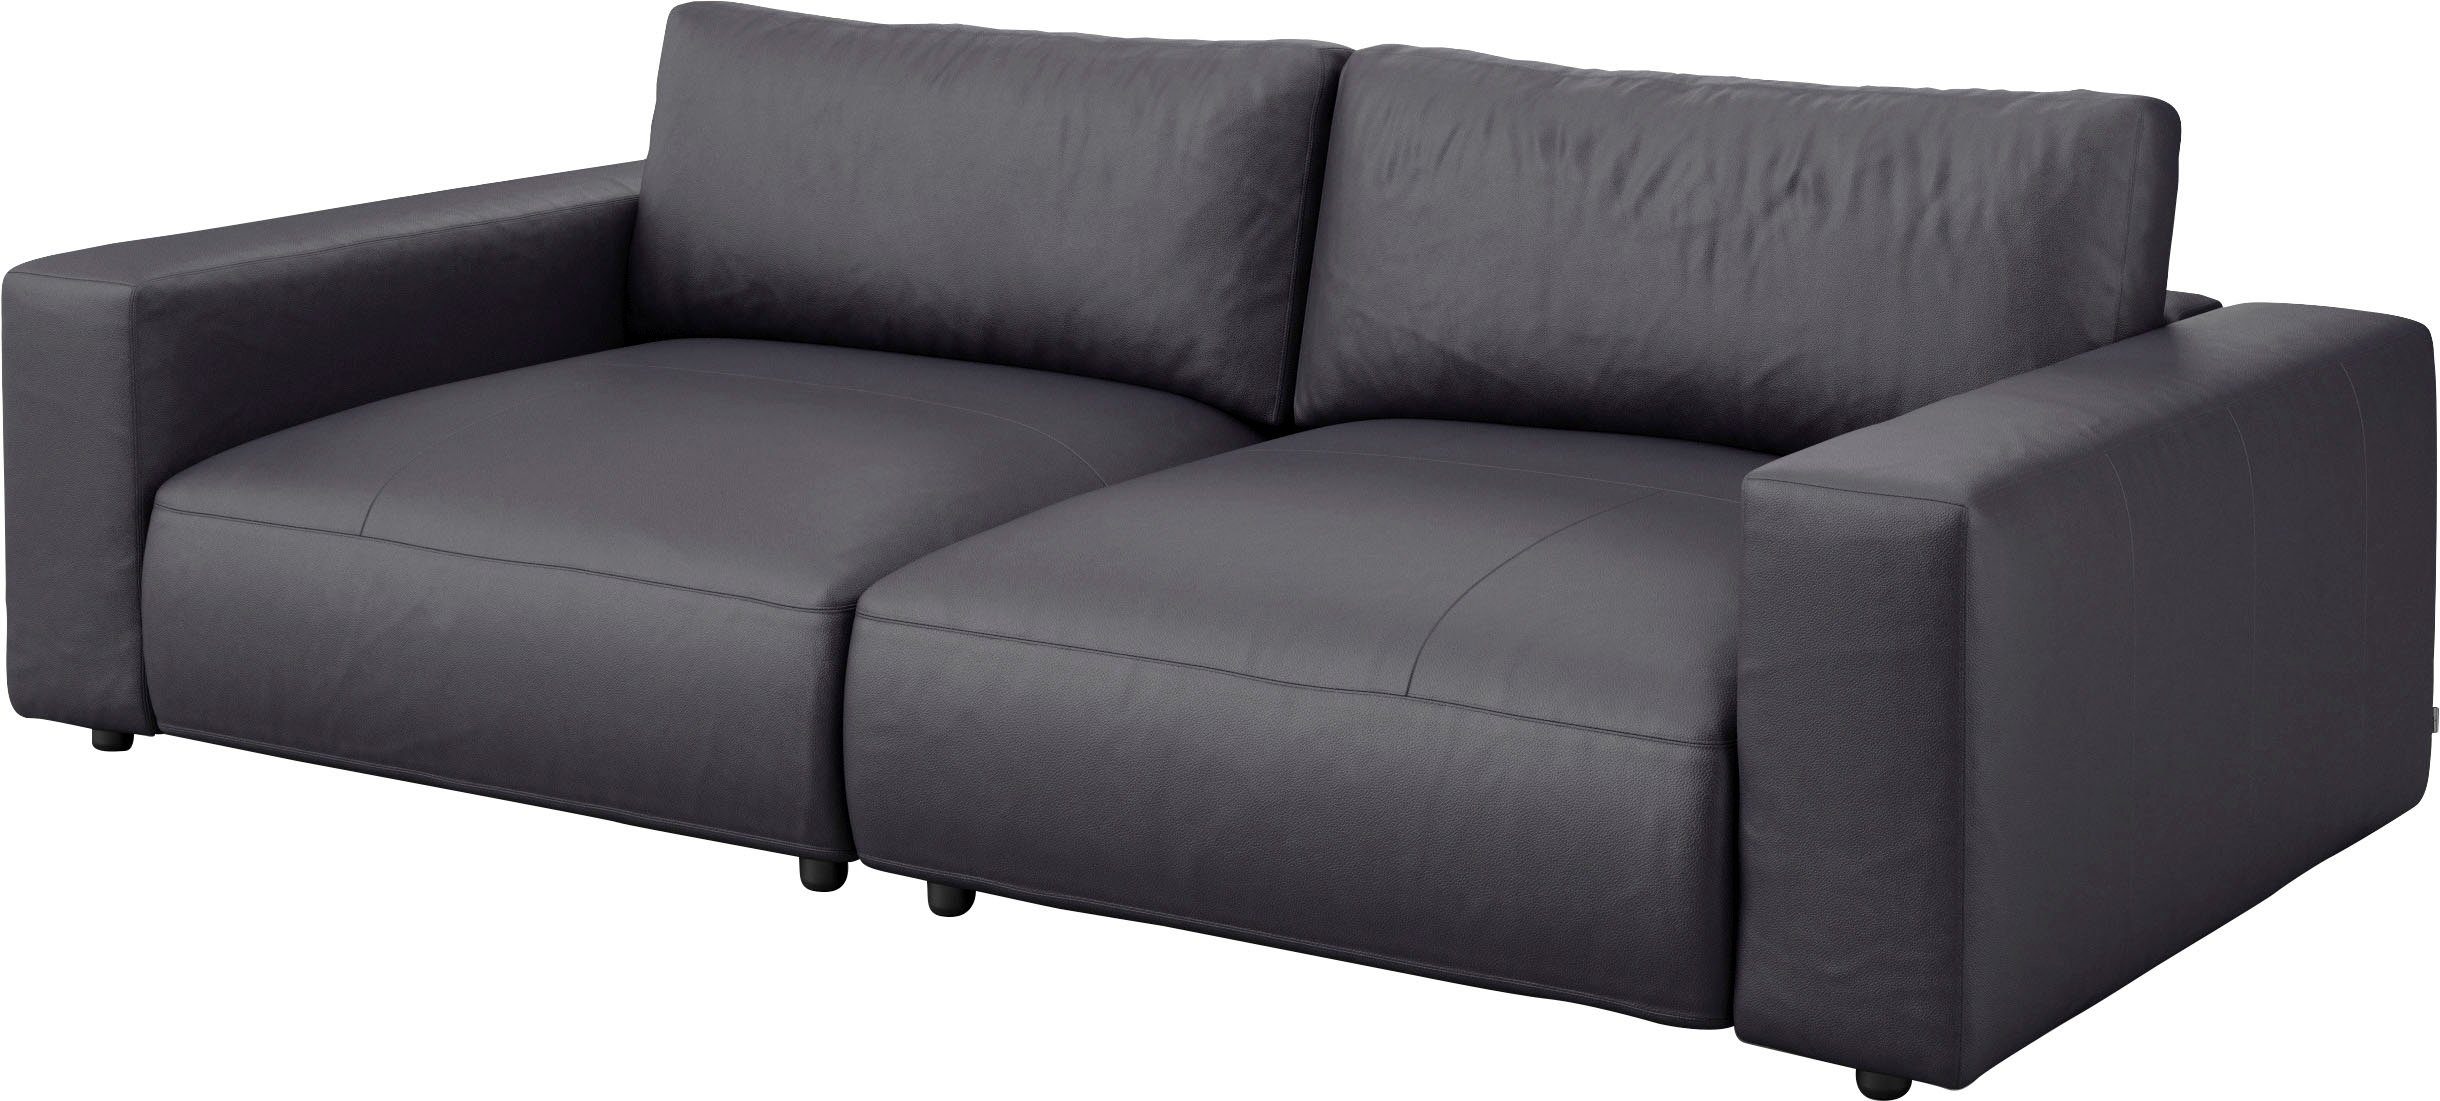 Big-Sofa unterschiedlichen by branded in 2,5-Sitzer Musterring vielen Qualitäten LUCIA, 4 Nähten, und M GALLERY